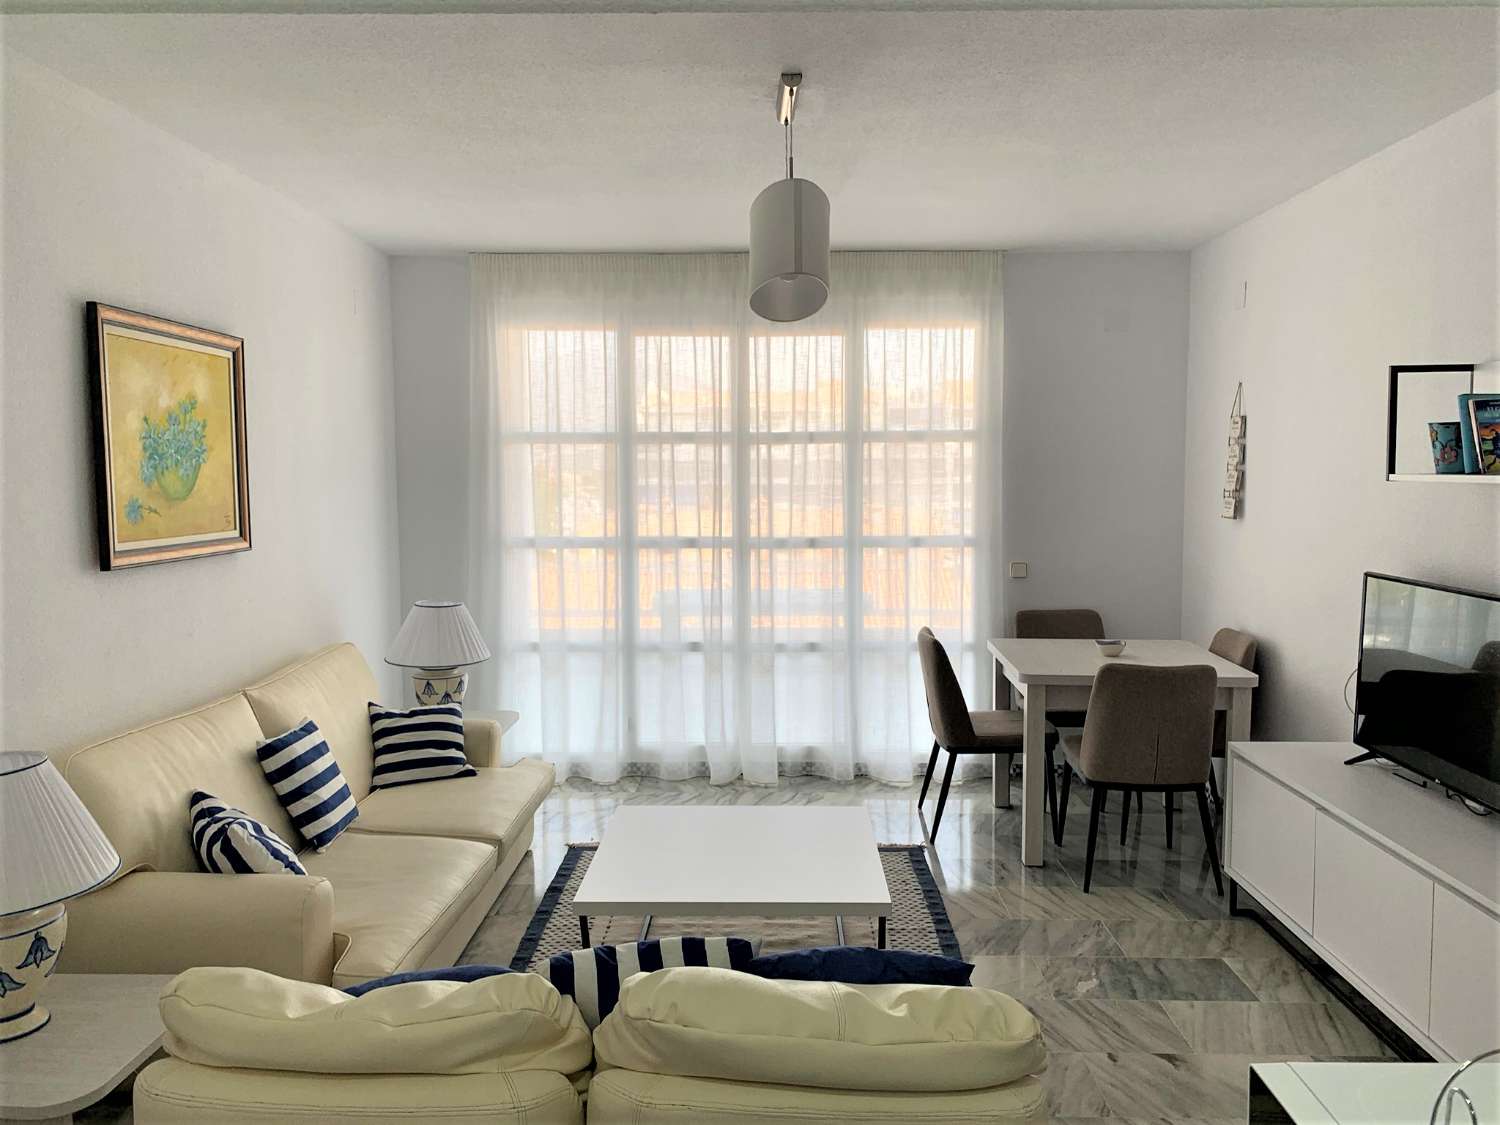 Grand appartement de 3 chambres sur la plage de Fuengirola, piscine, climatisation, wi-fi